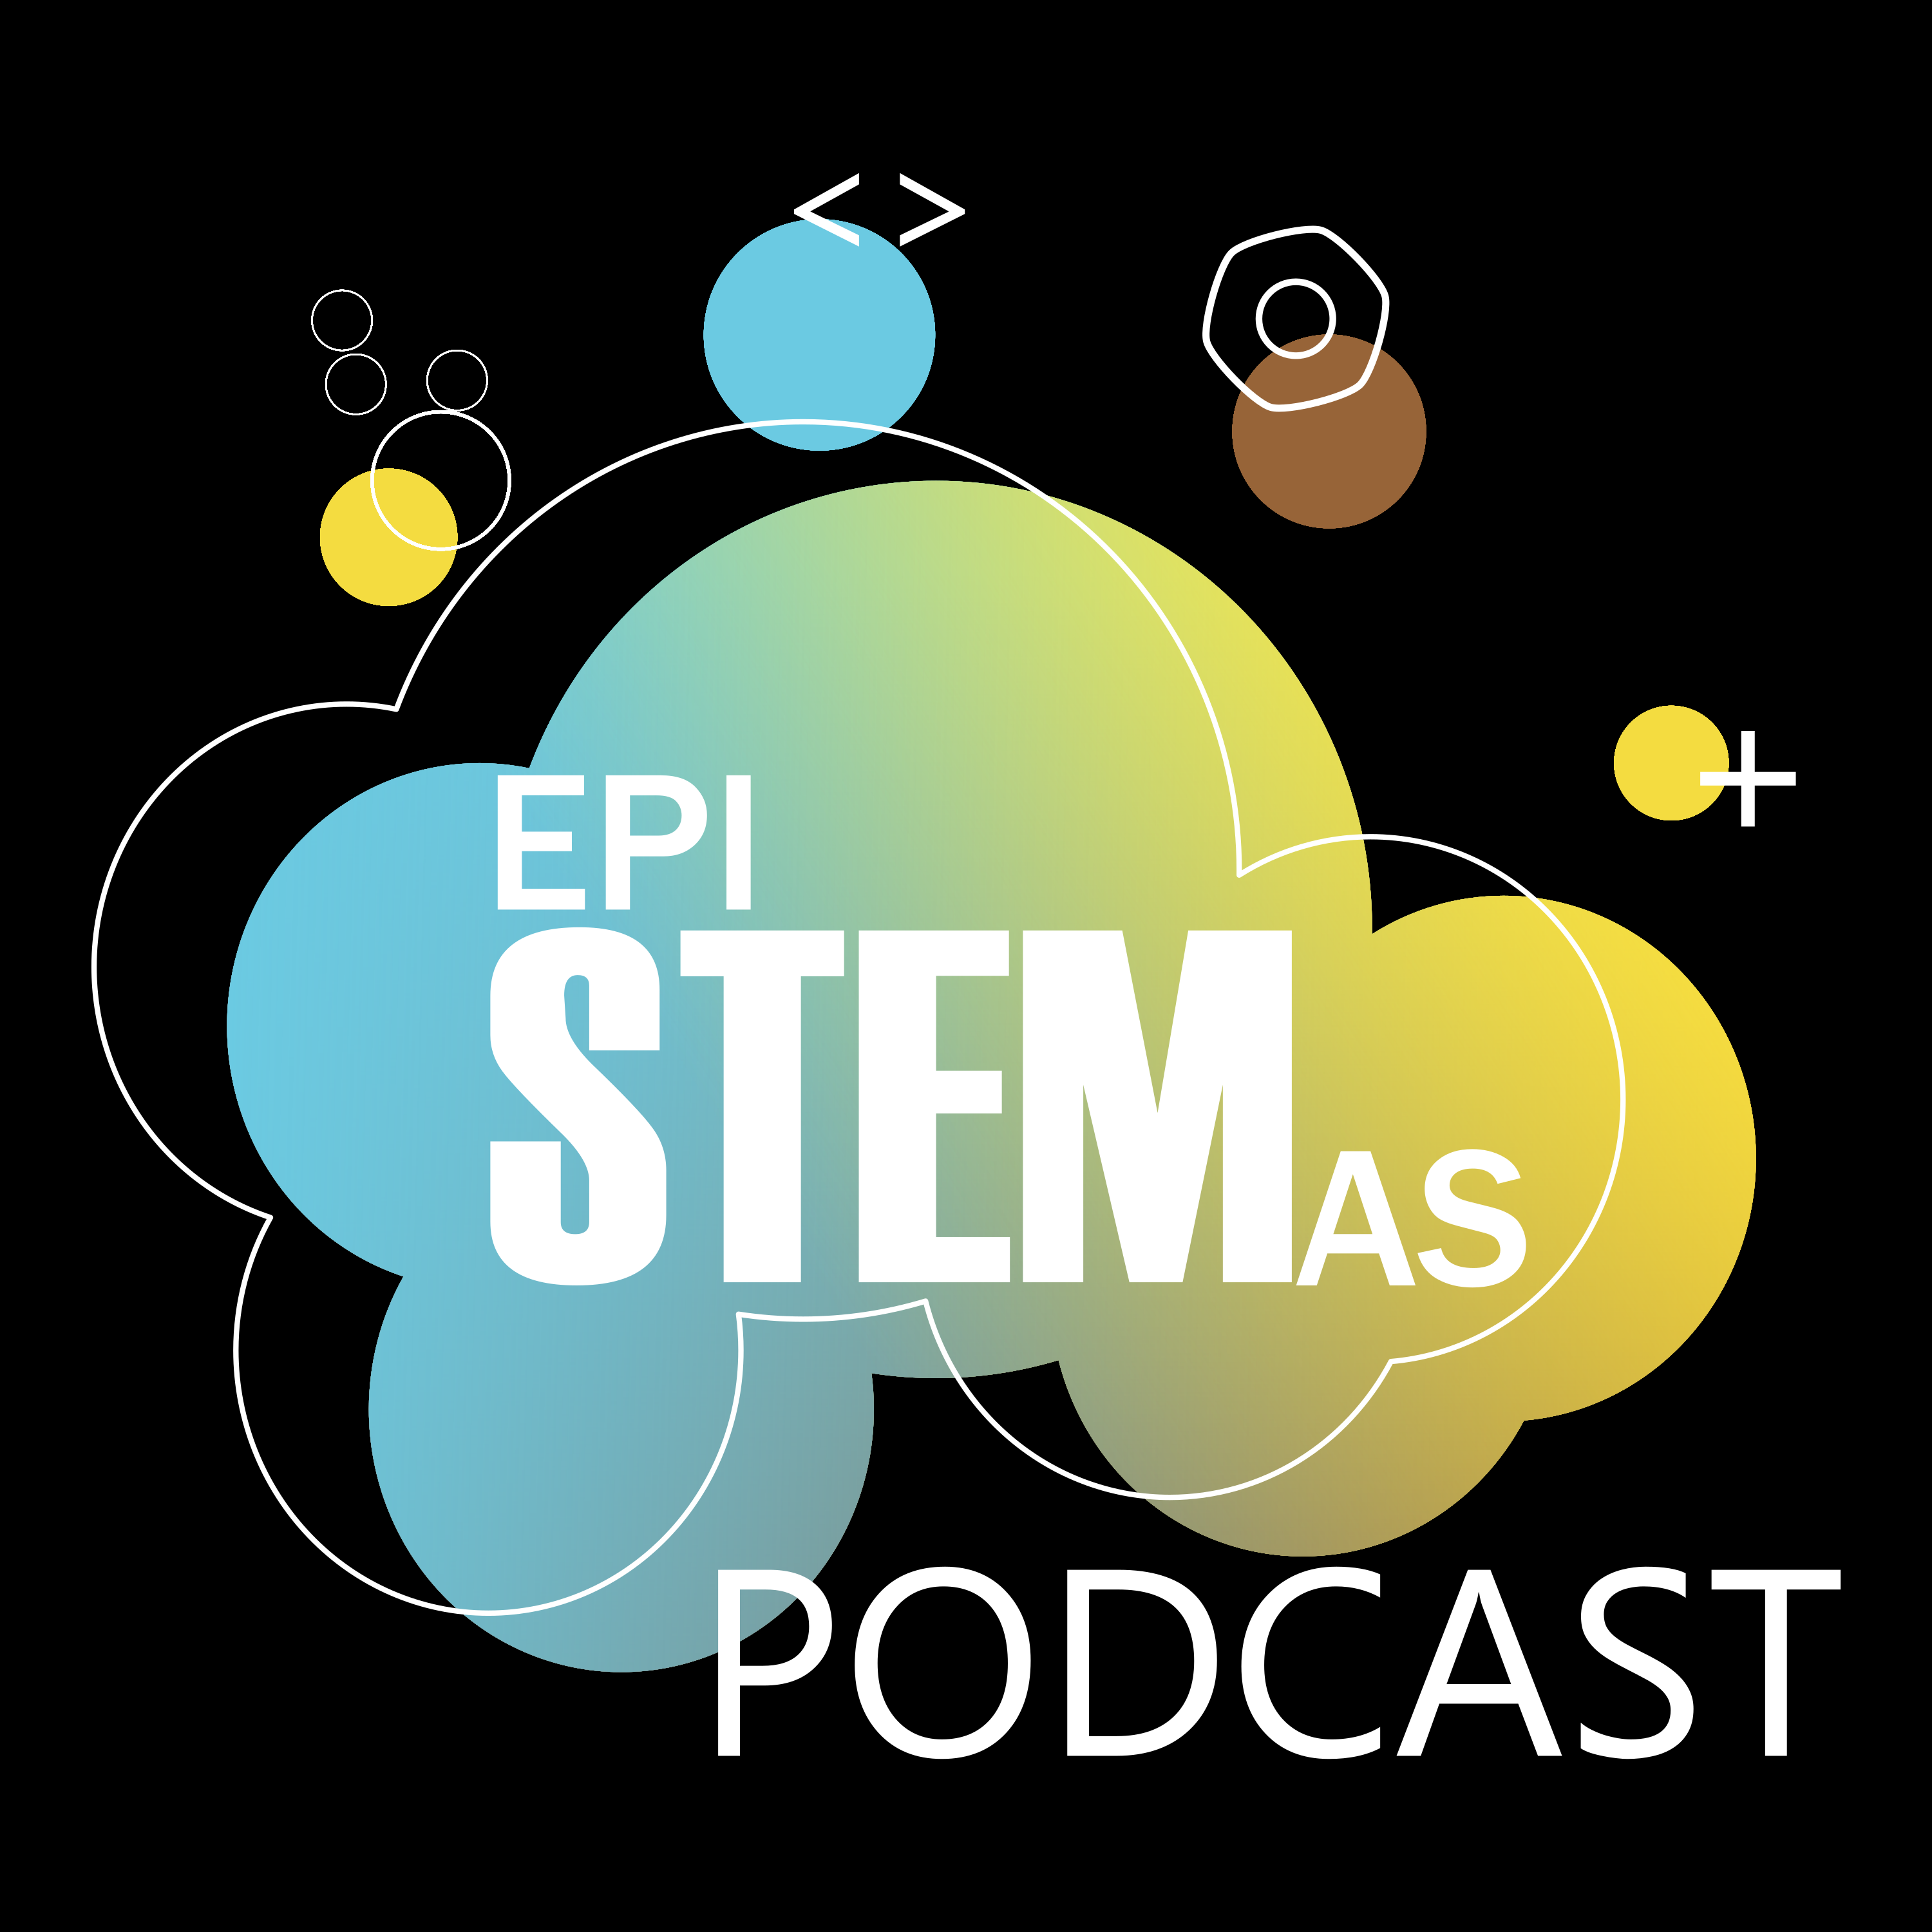 EpiSTEMas Podcast: rompiendo estereotipos en STEM, una historia a la vez. Tu podcast de ciencia en español.